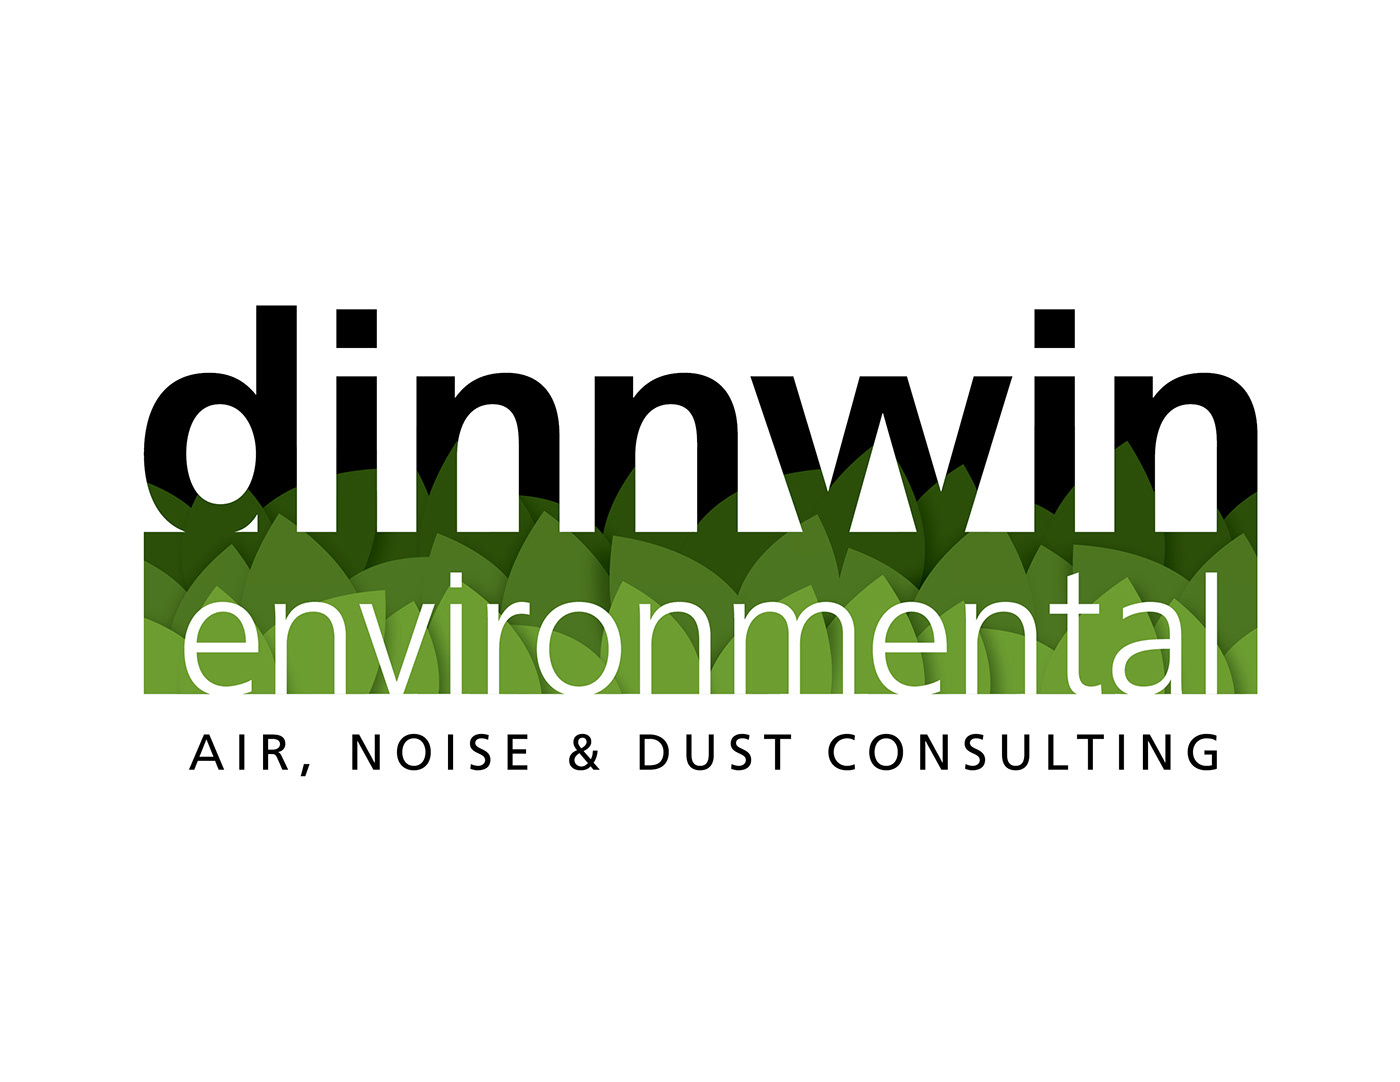 environment  logo  identity brand logo identity